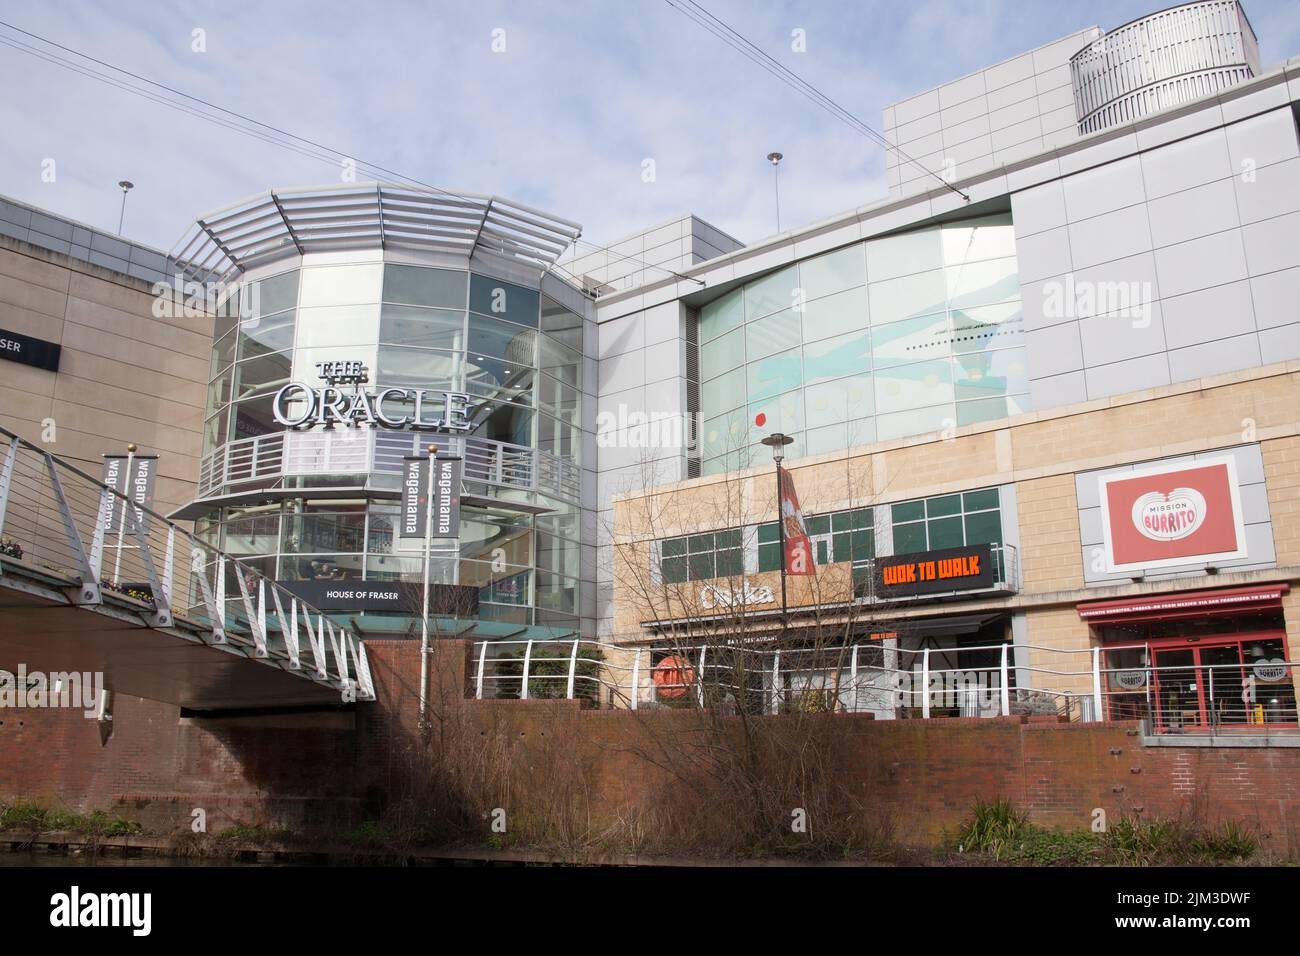 Vistas del Oracle Shopping Centre en Reading, Berkshire en el Reino Unido Foto de stock